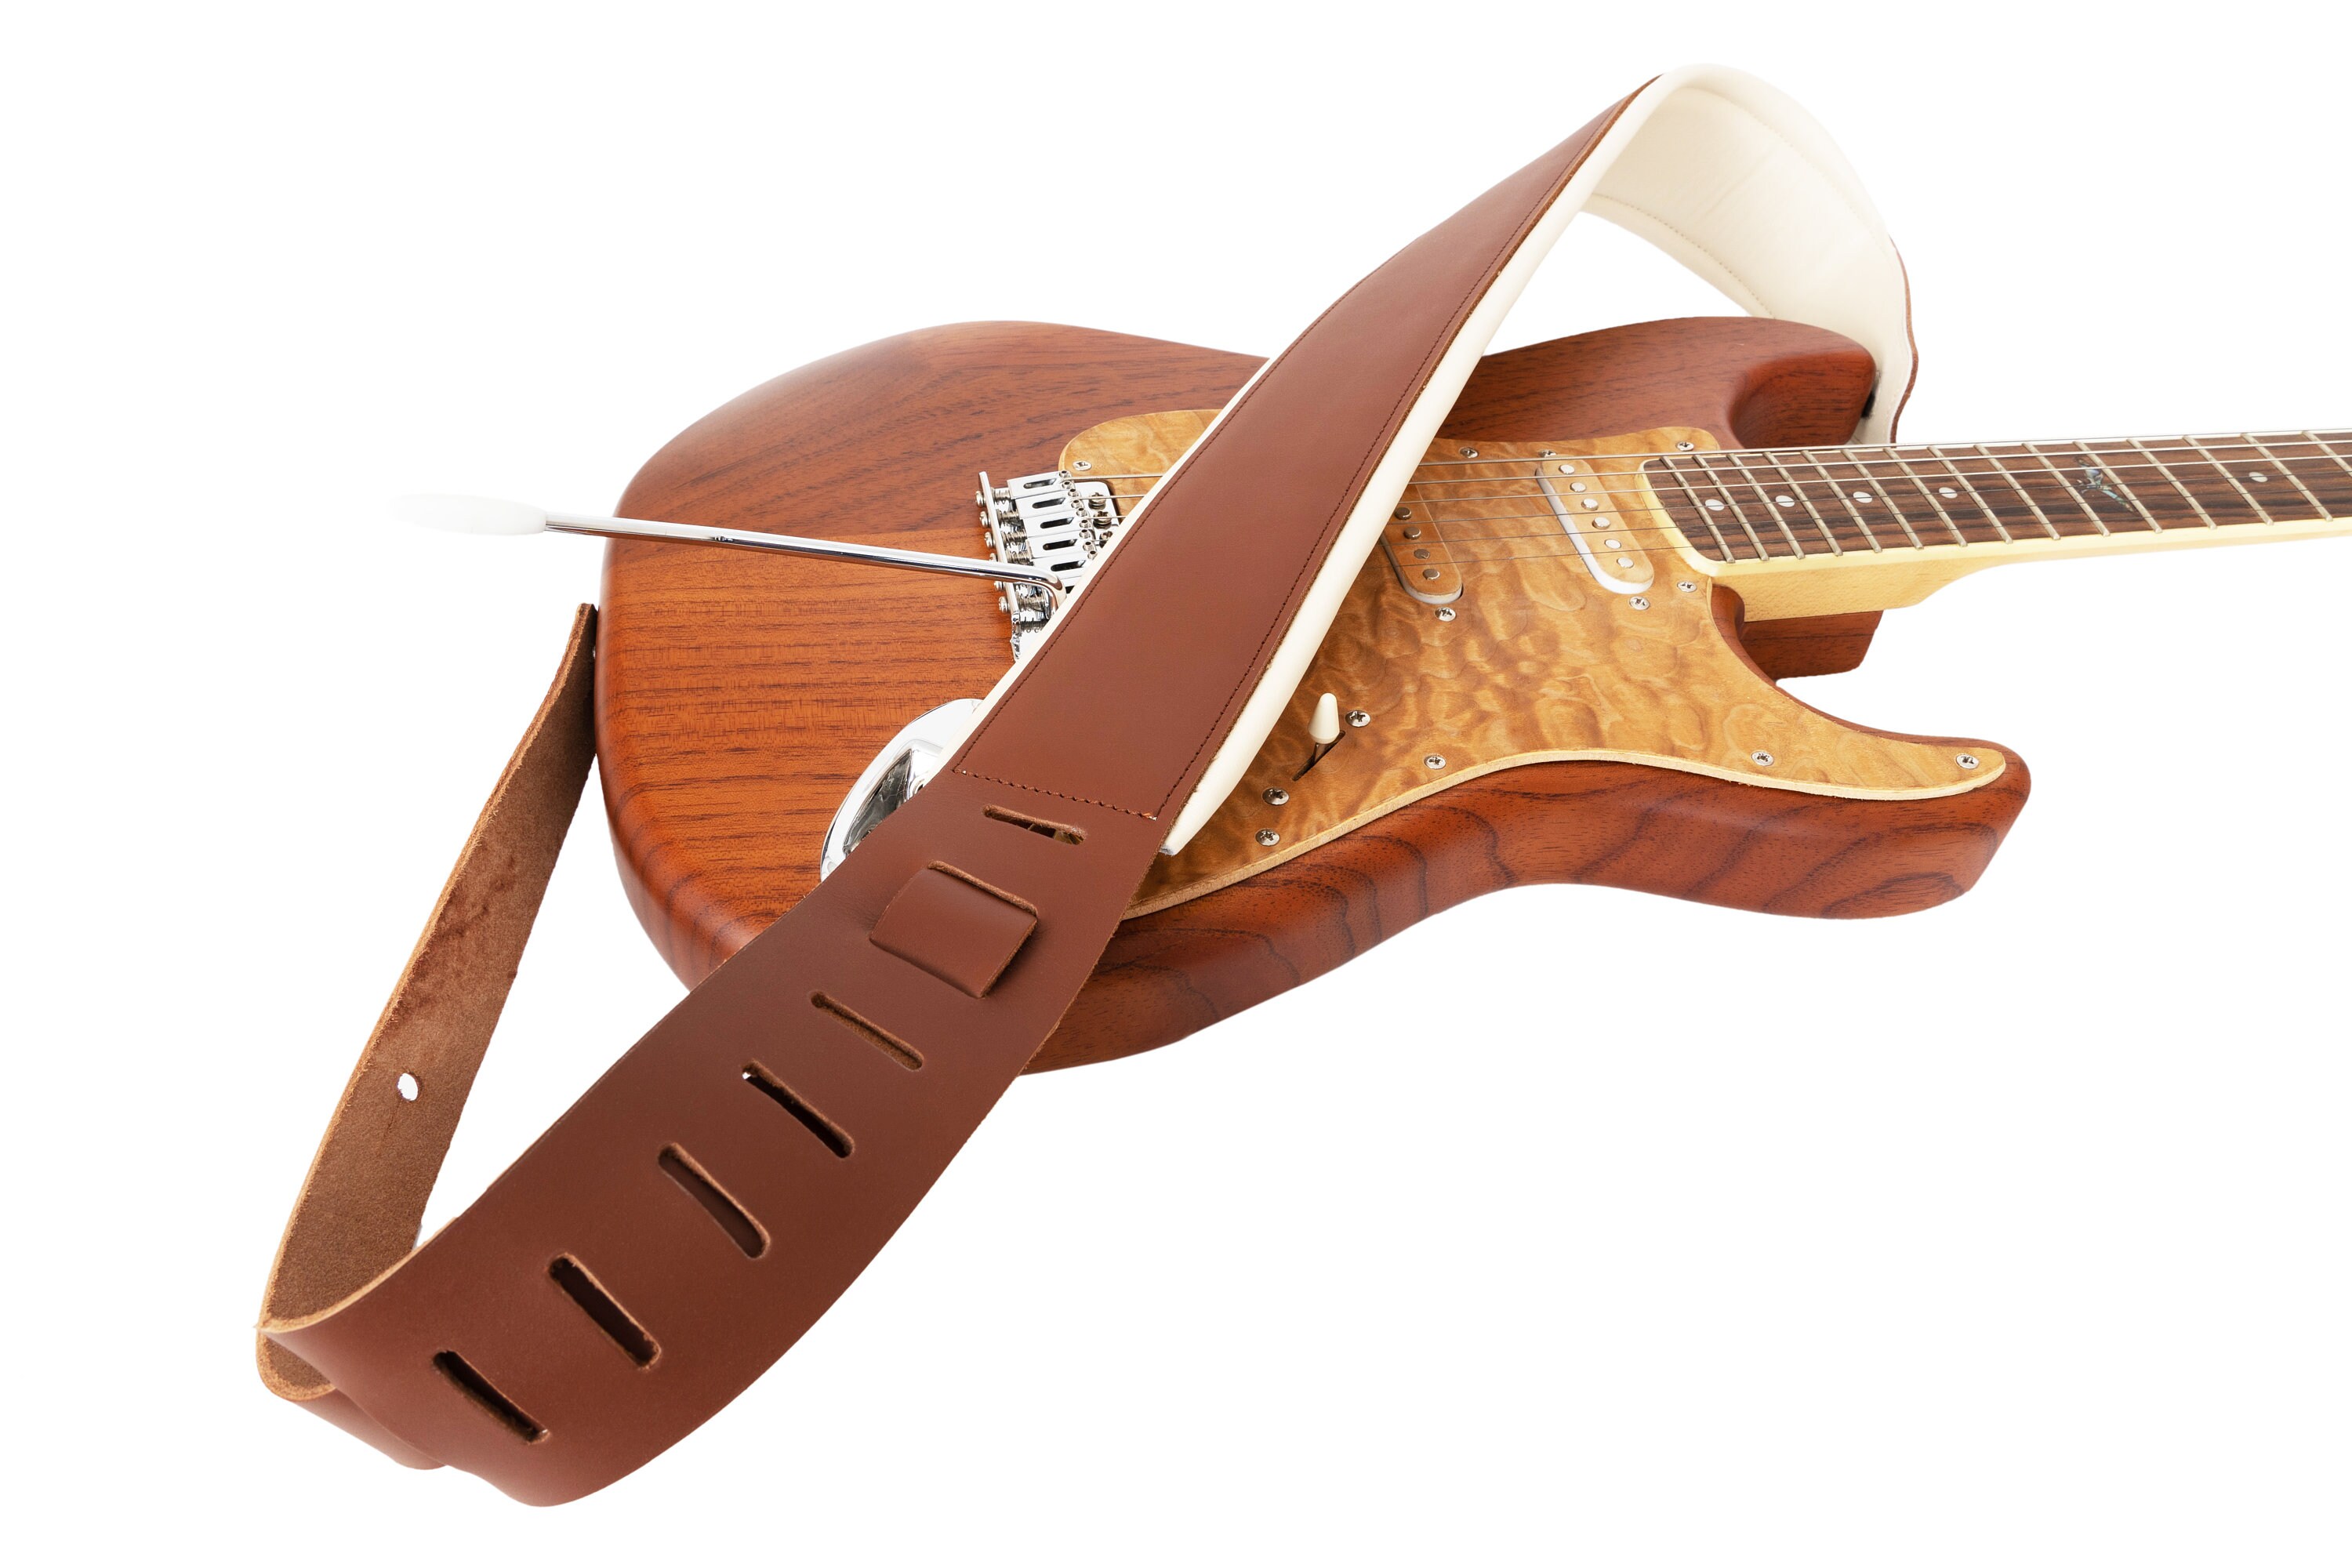 Sangle de guitare en cuir, leather guitar strap fabrication artisanale  indie - Un grand marché